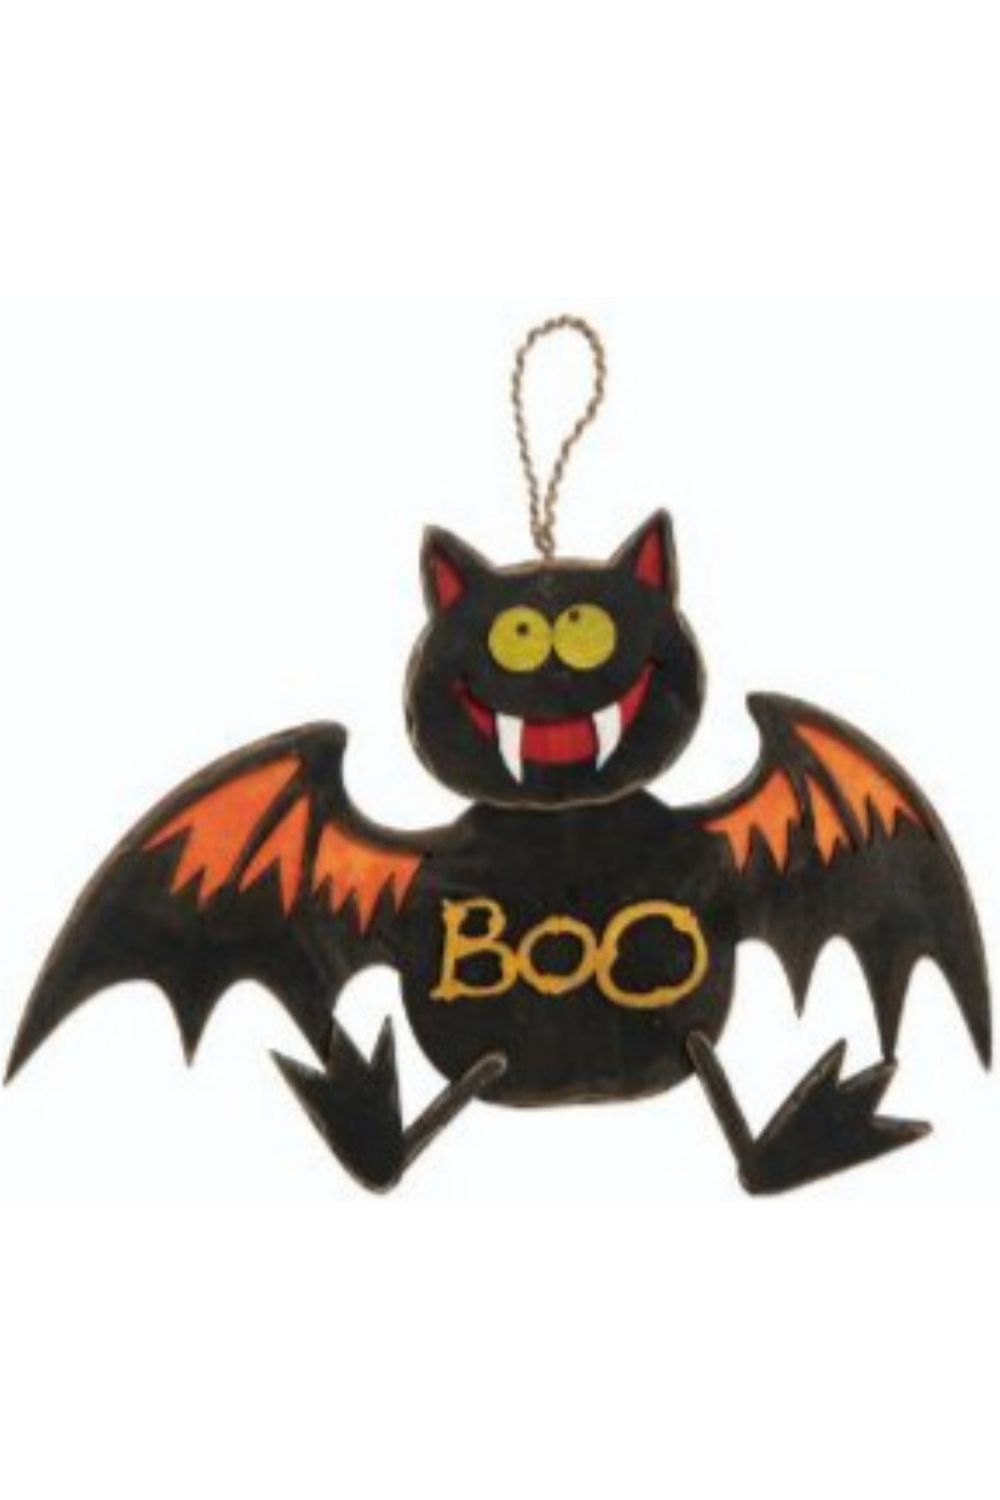 12" Halloween Hanging Decor: Bat - Michelle's aDOORable Creations - Wooden/Metal Signs